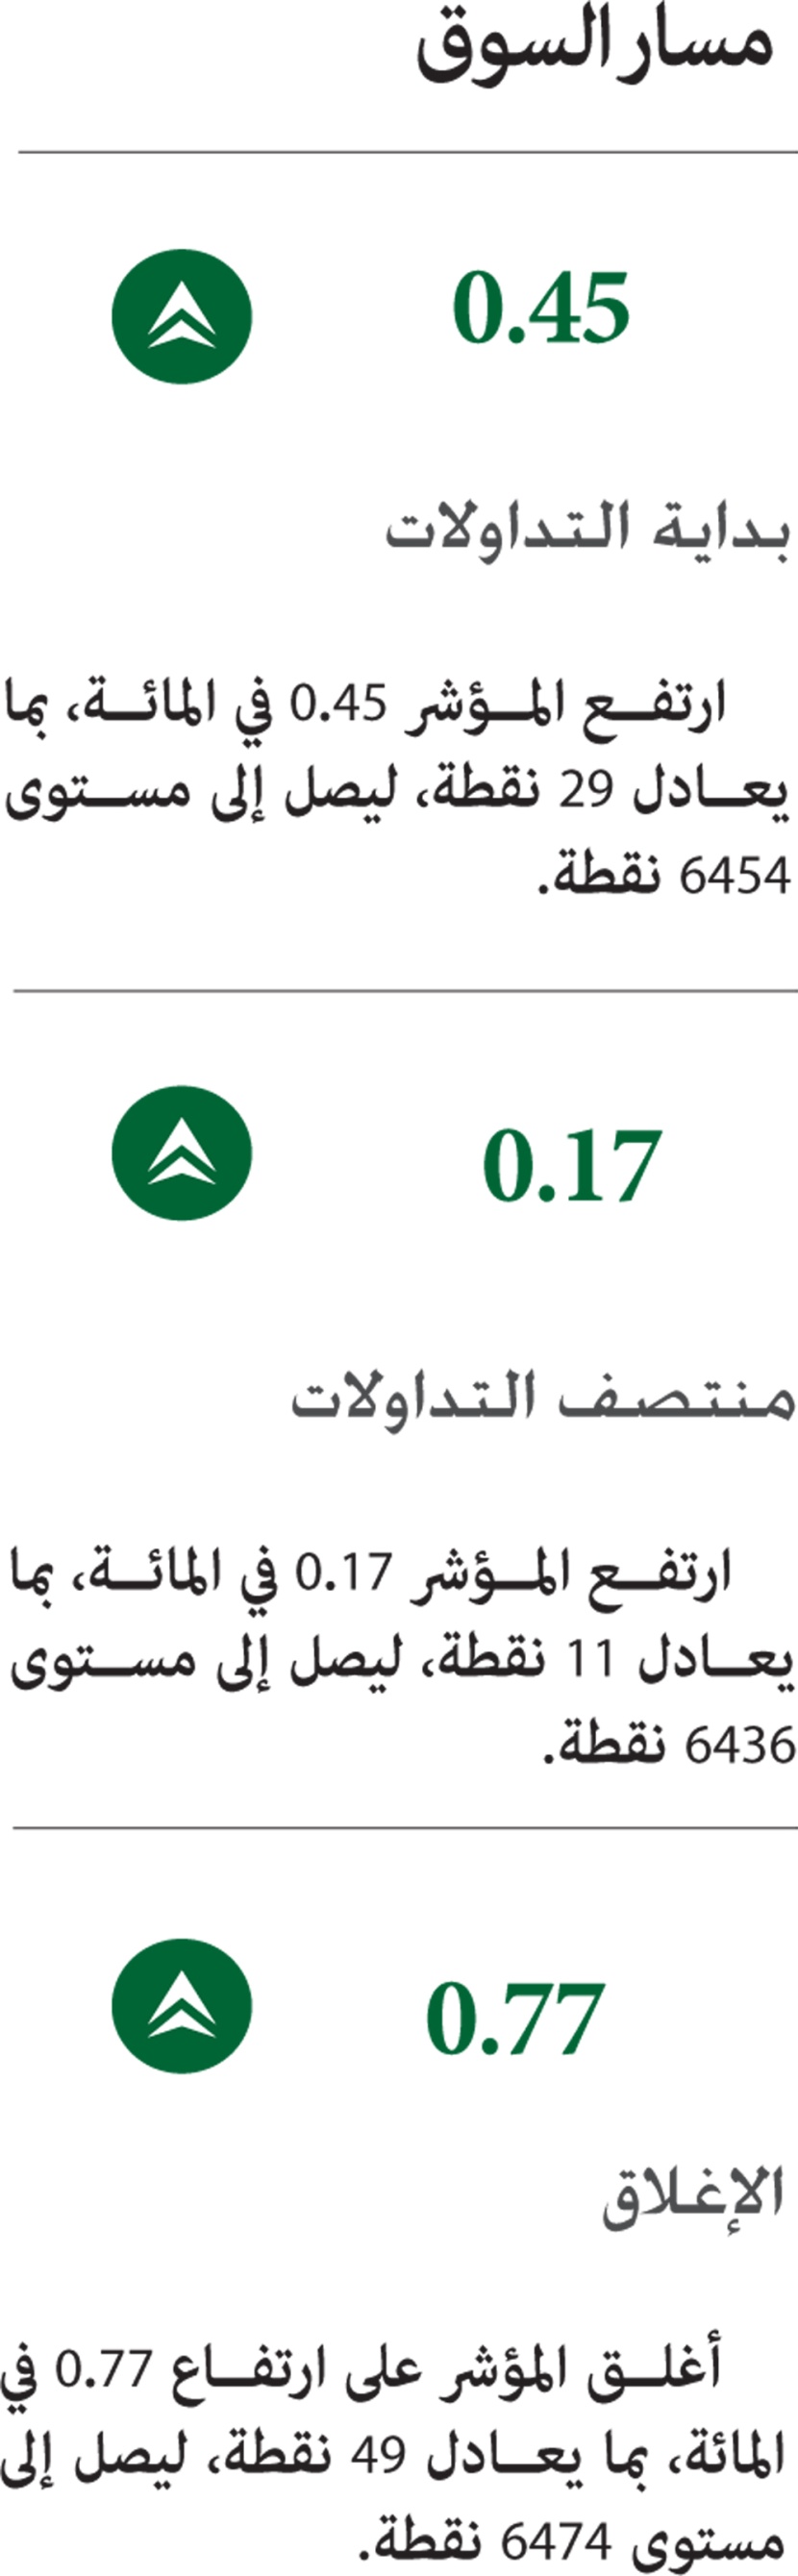 رغم تراجع السيولة 34 % .. الأسهم السعودية تستعيد اللون الأخضر بدعم «القياديات»